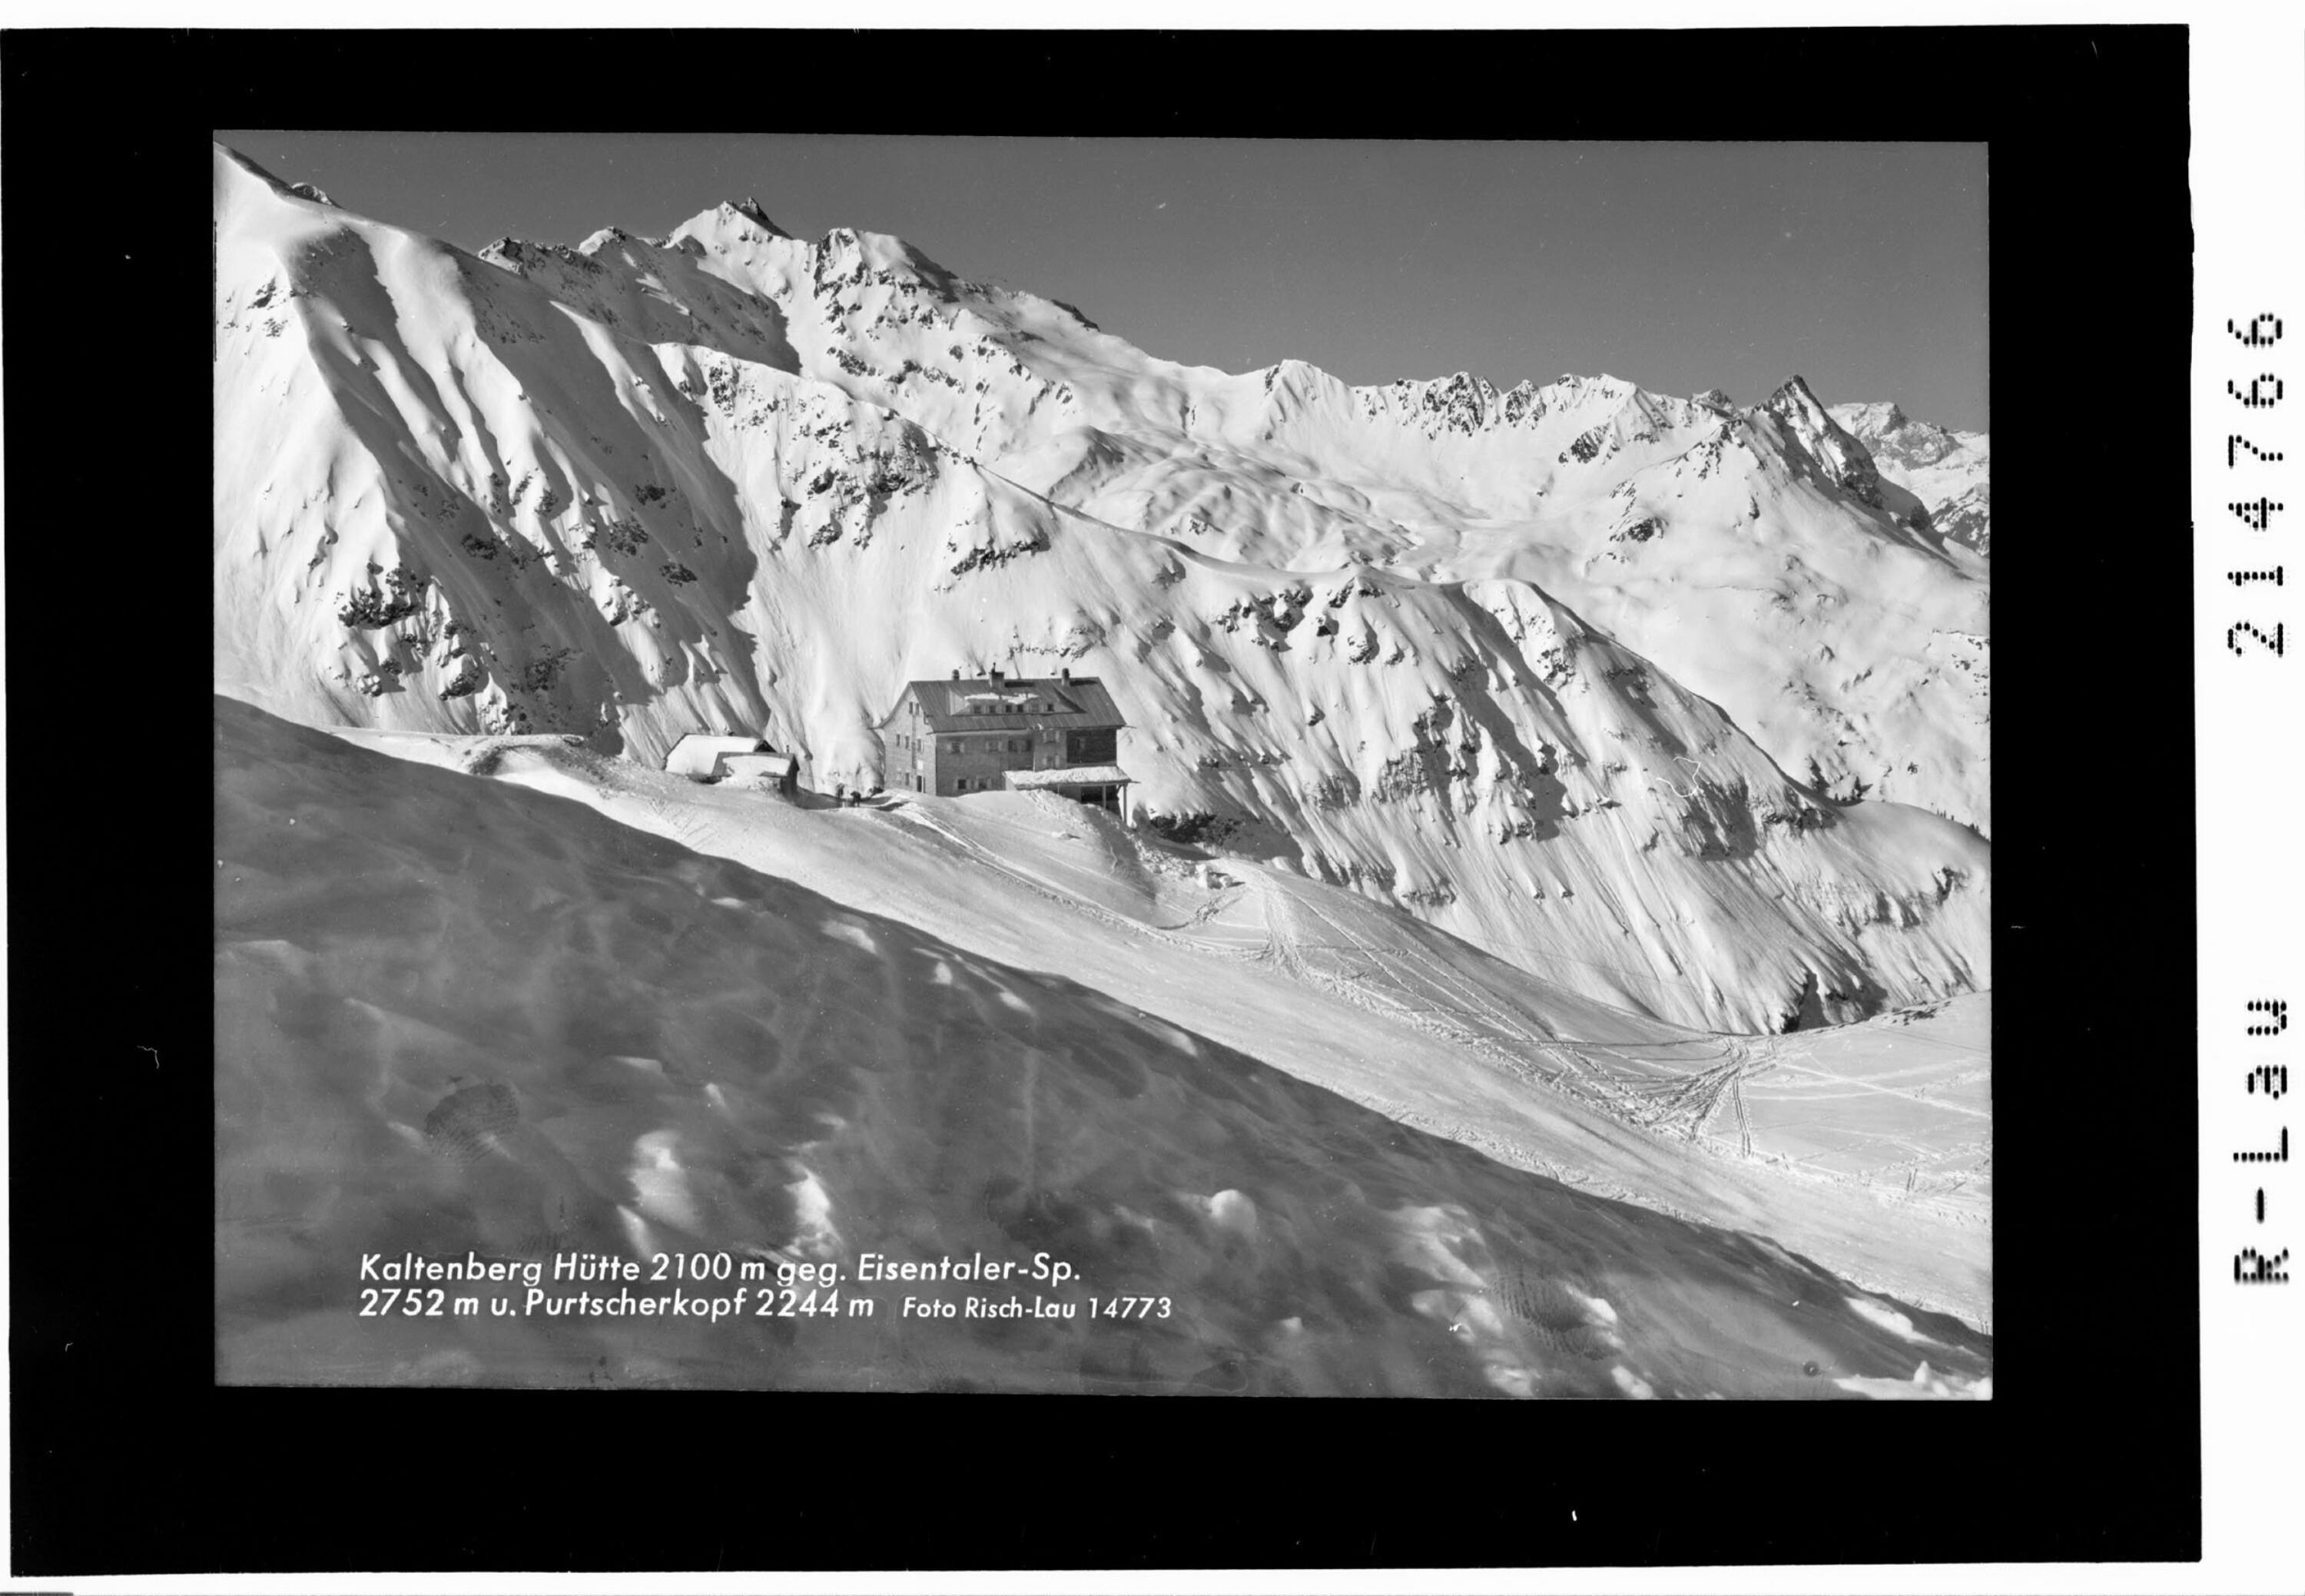 Kaltenberg Hütte 2100 m gegen Eisentaler Spitze 2752 m und Purtschakopf 2244 m></div>


    <hr>
    <div class=